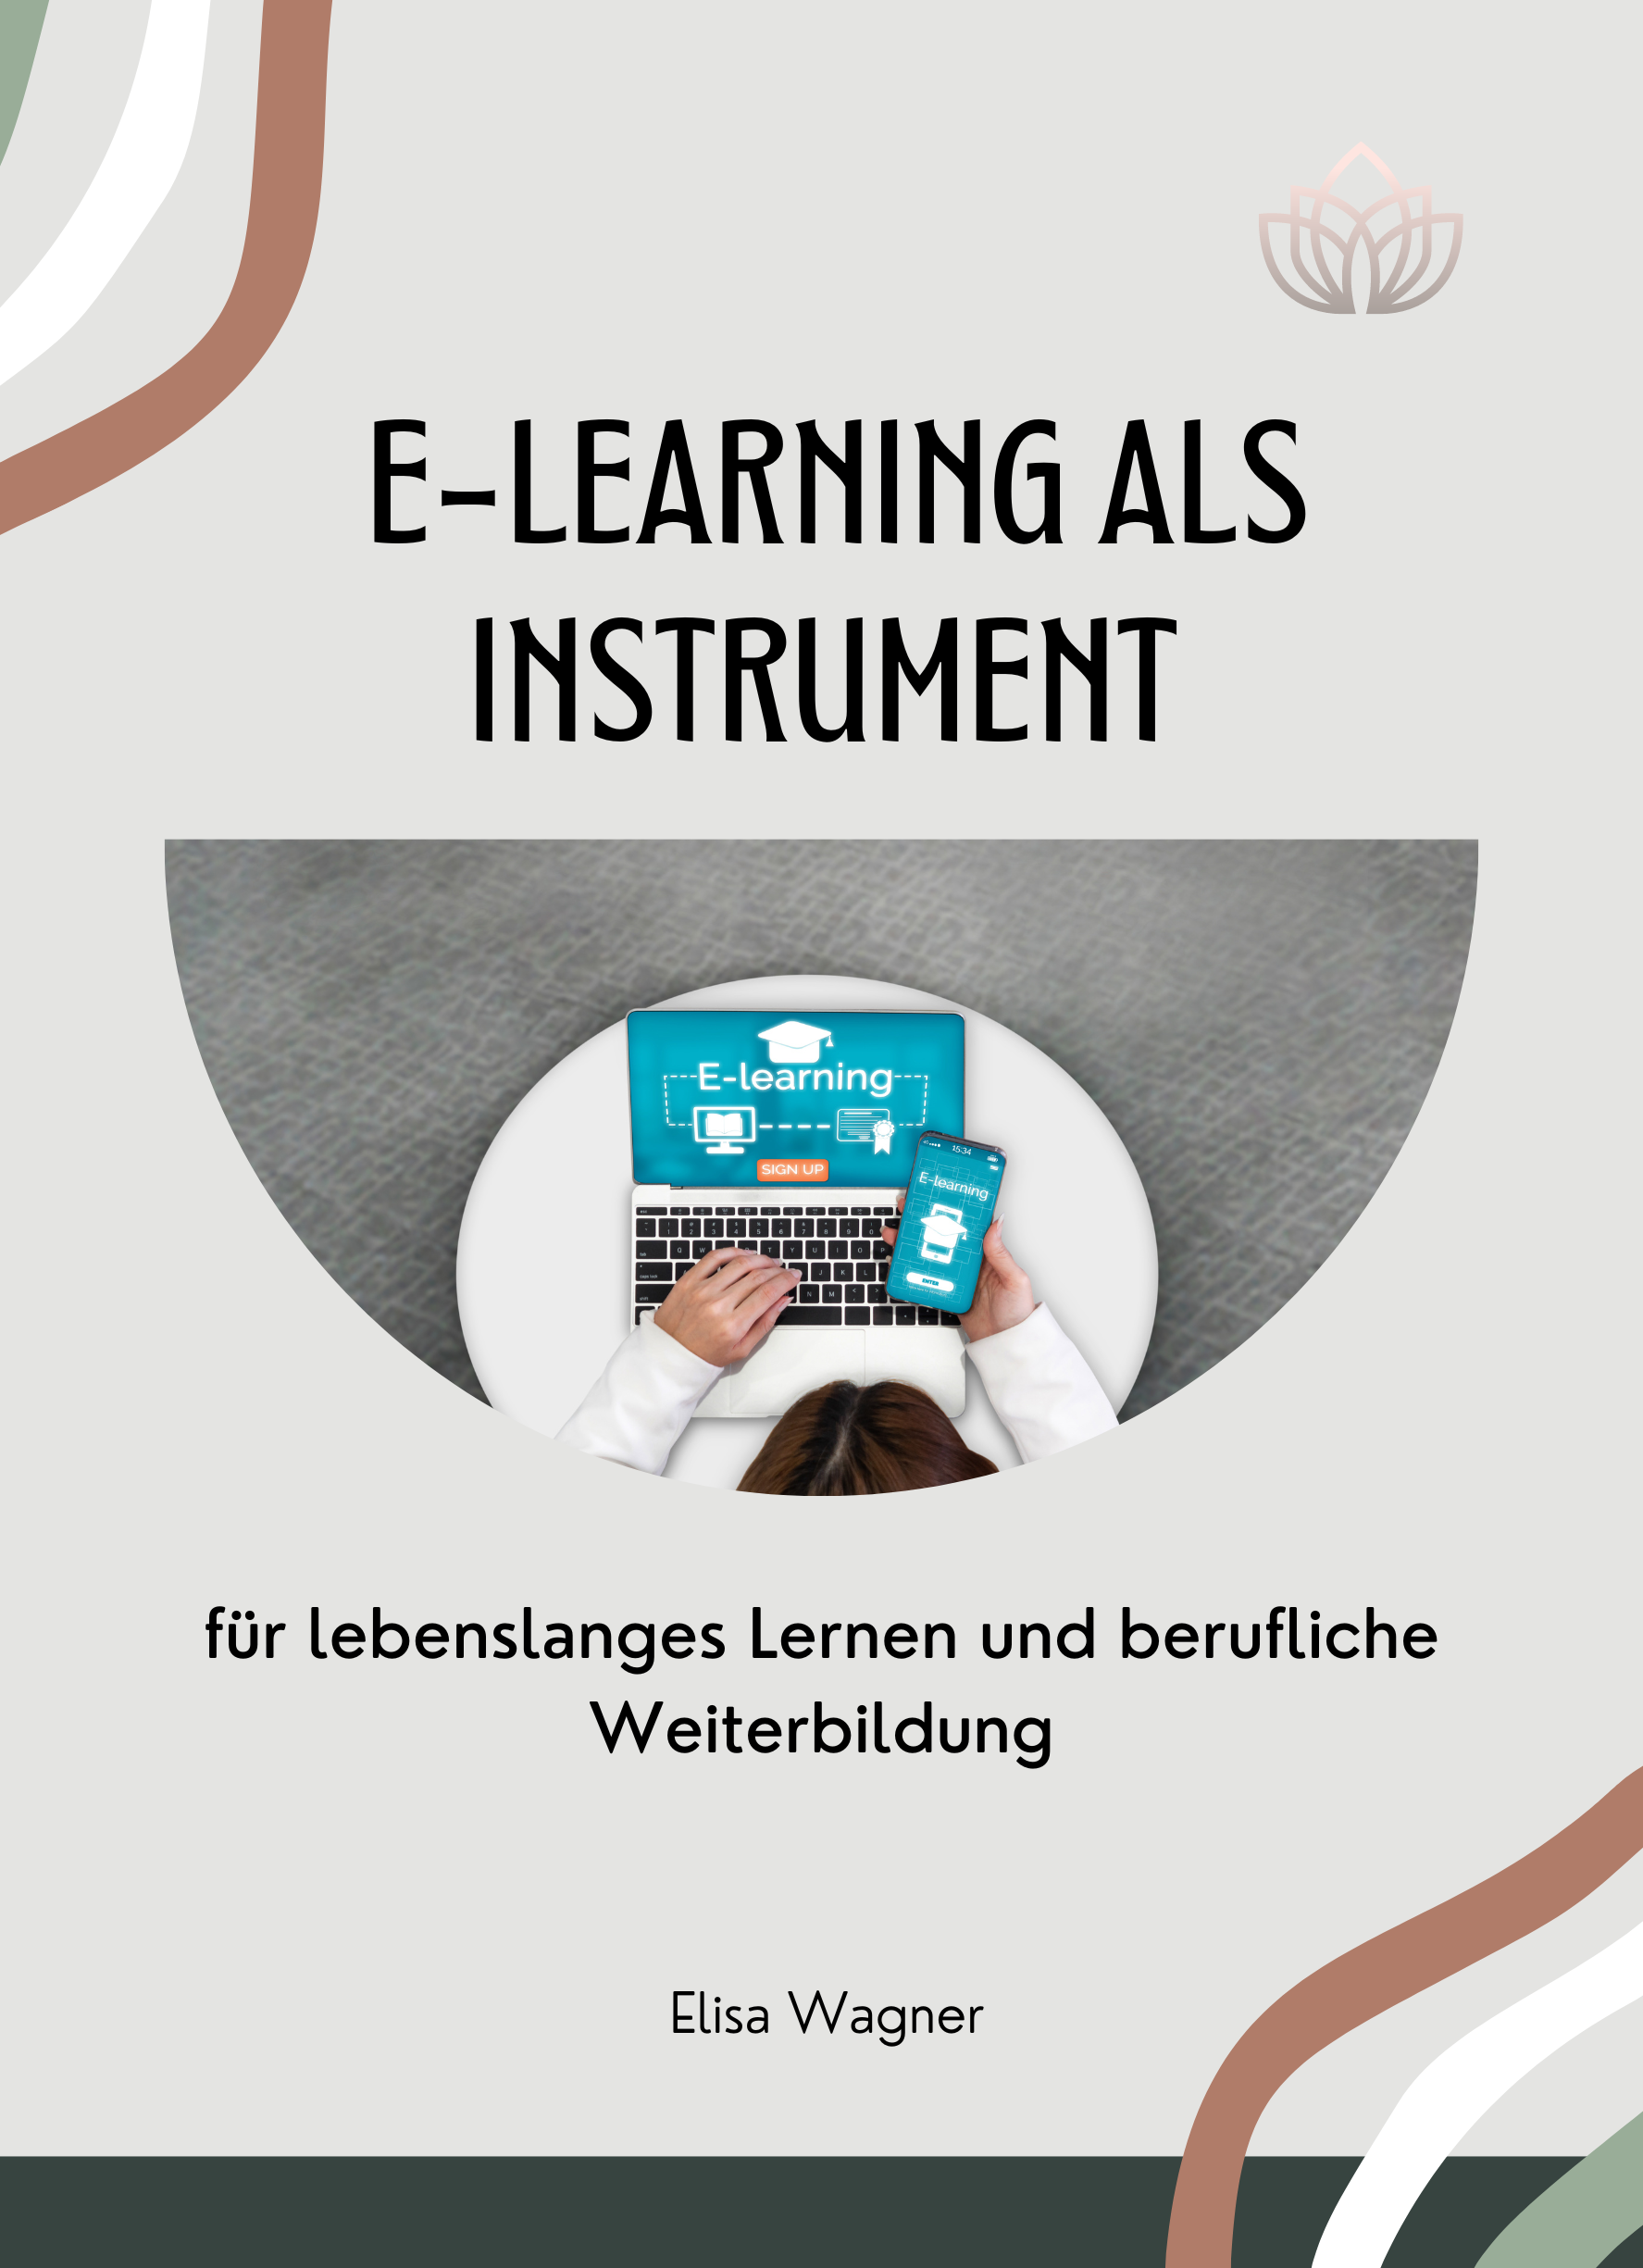 E-Learning als Instrument für lebenslanges Lernen